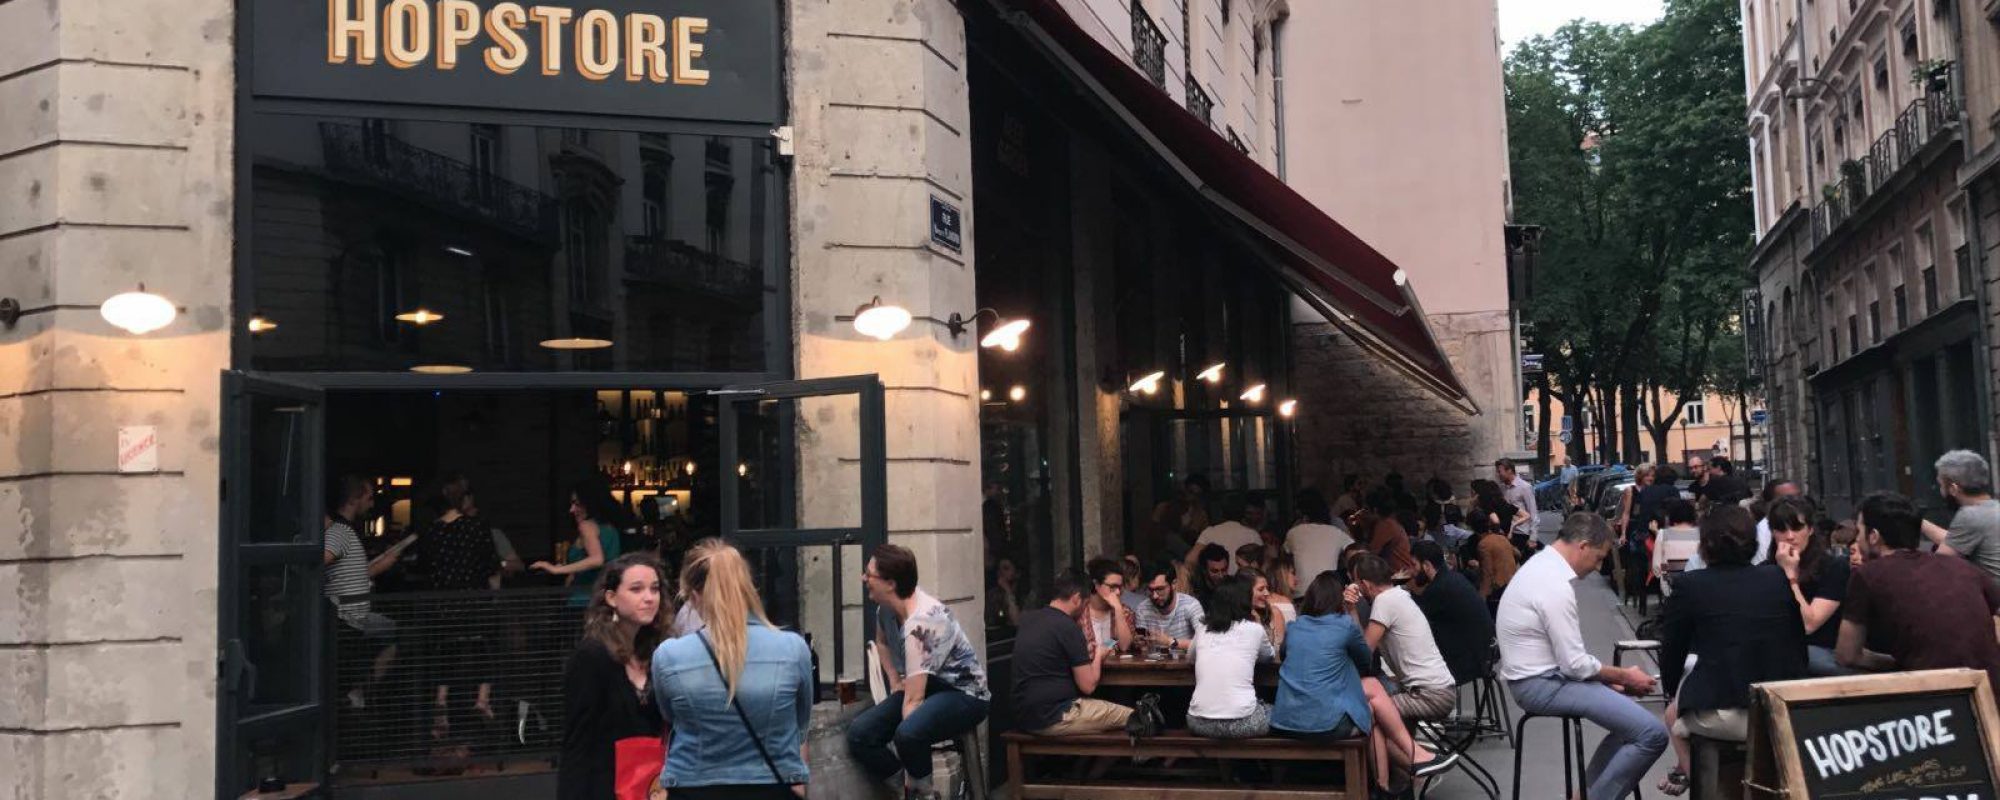 Le Hopstore, nouveau bar à bières à Lyon